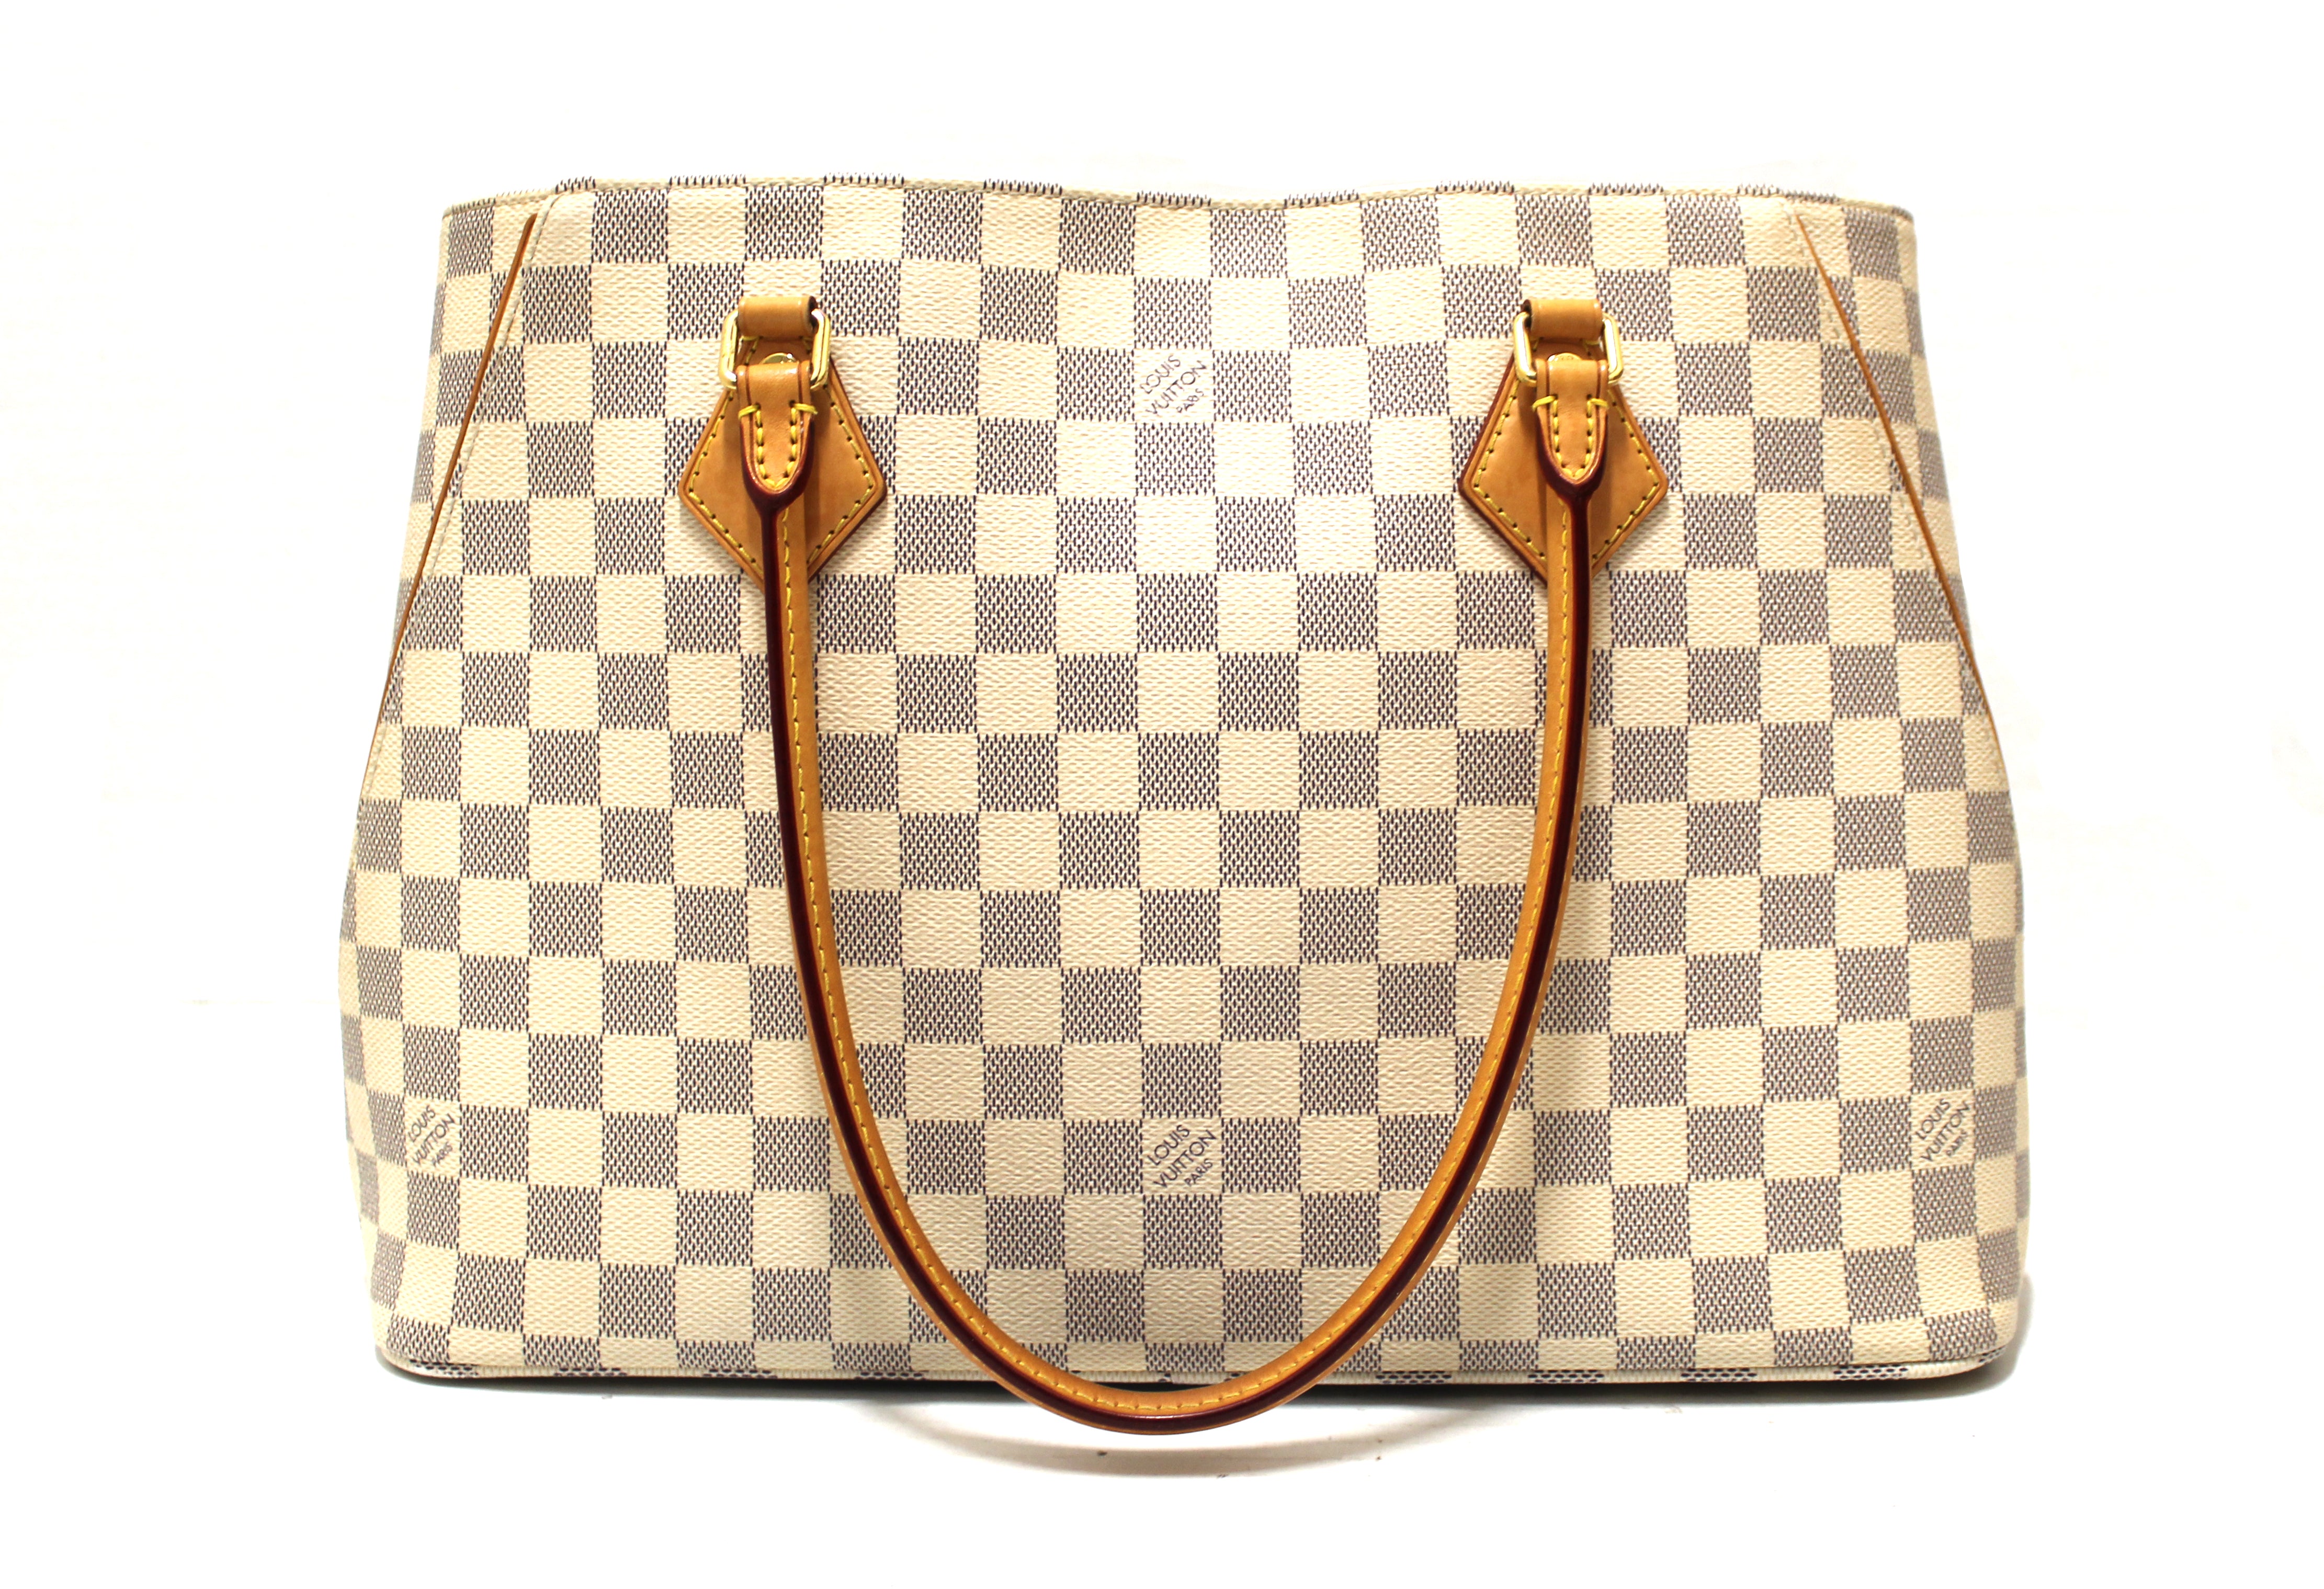 Sold at Auction: Louis Vuitton, Louis Vuitton handbag, Calvi Tote Damier  Azur, leather, accompanied by provenance documents